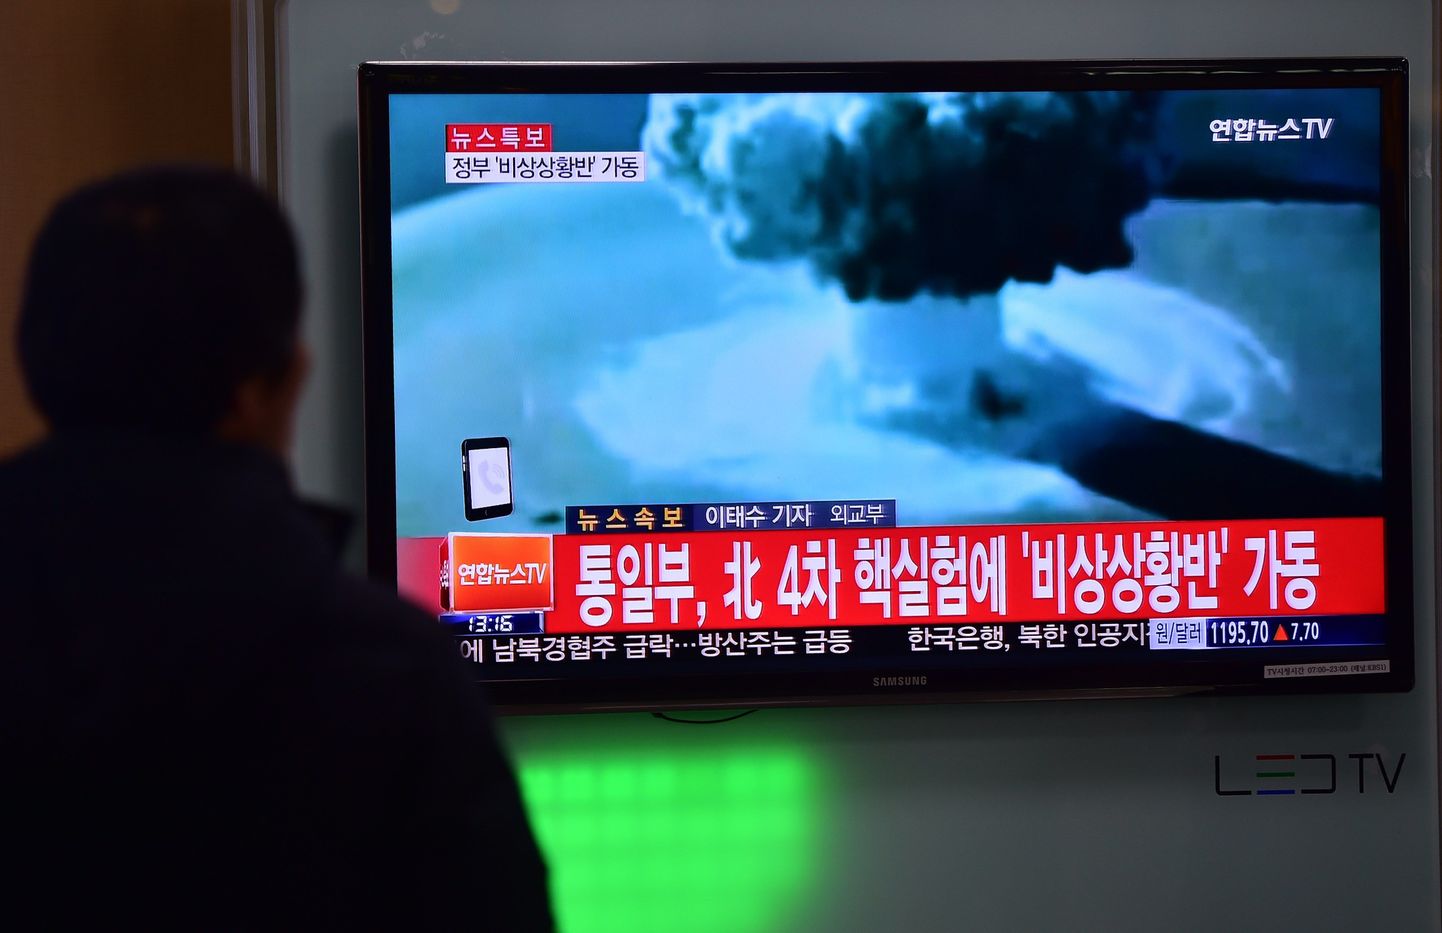 Lõuna-Korea telekanal näitamas uudist Põhja-Korea vesinikupommikatsetuse kohta